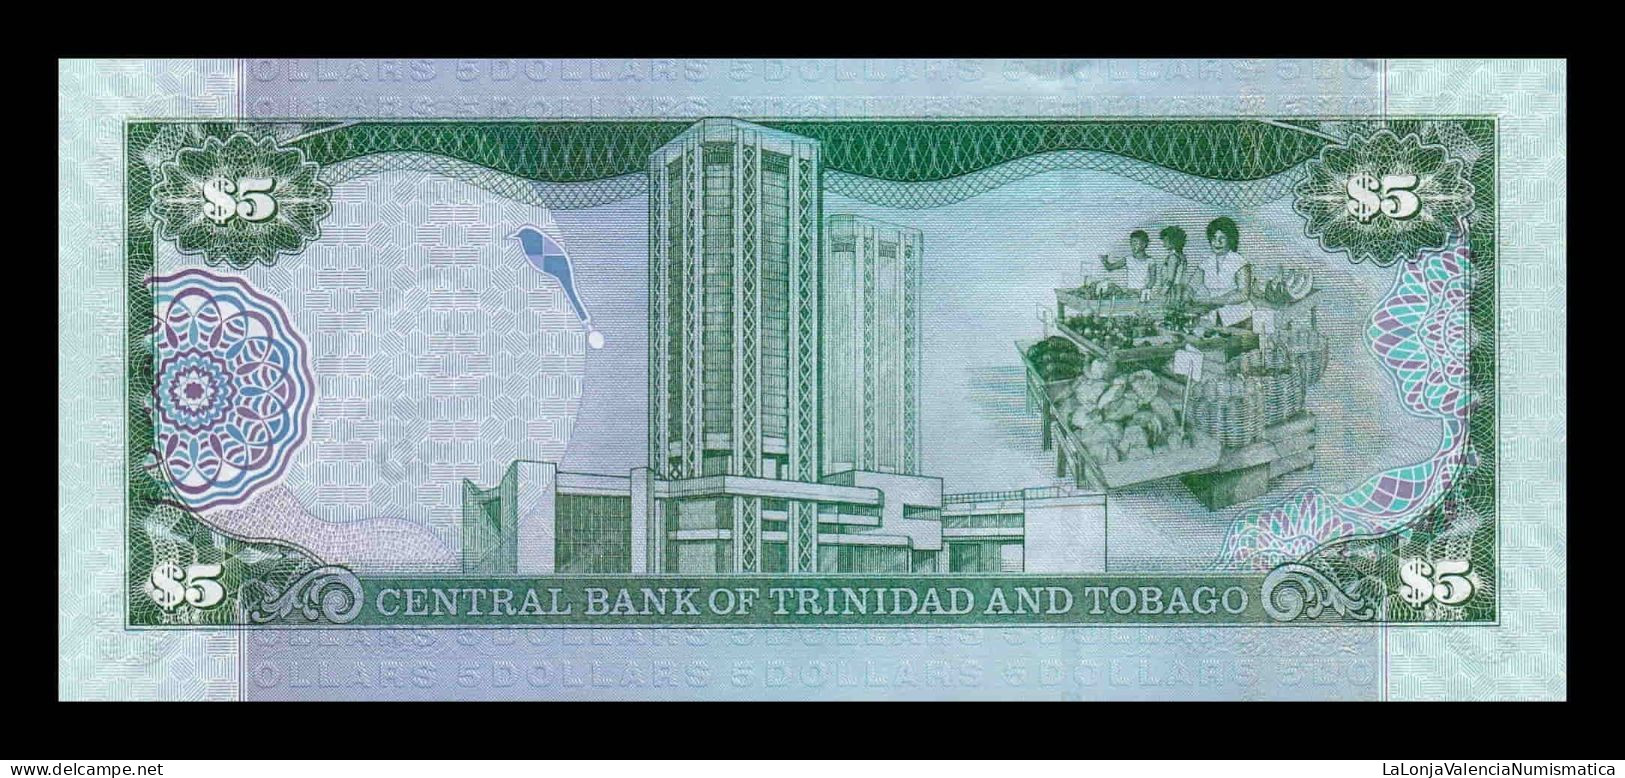 Trinidad & Tobago 5 Dollars 2006 Pick 47a Sc Unc - Trindad & Tobago